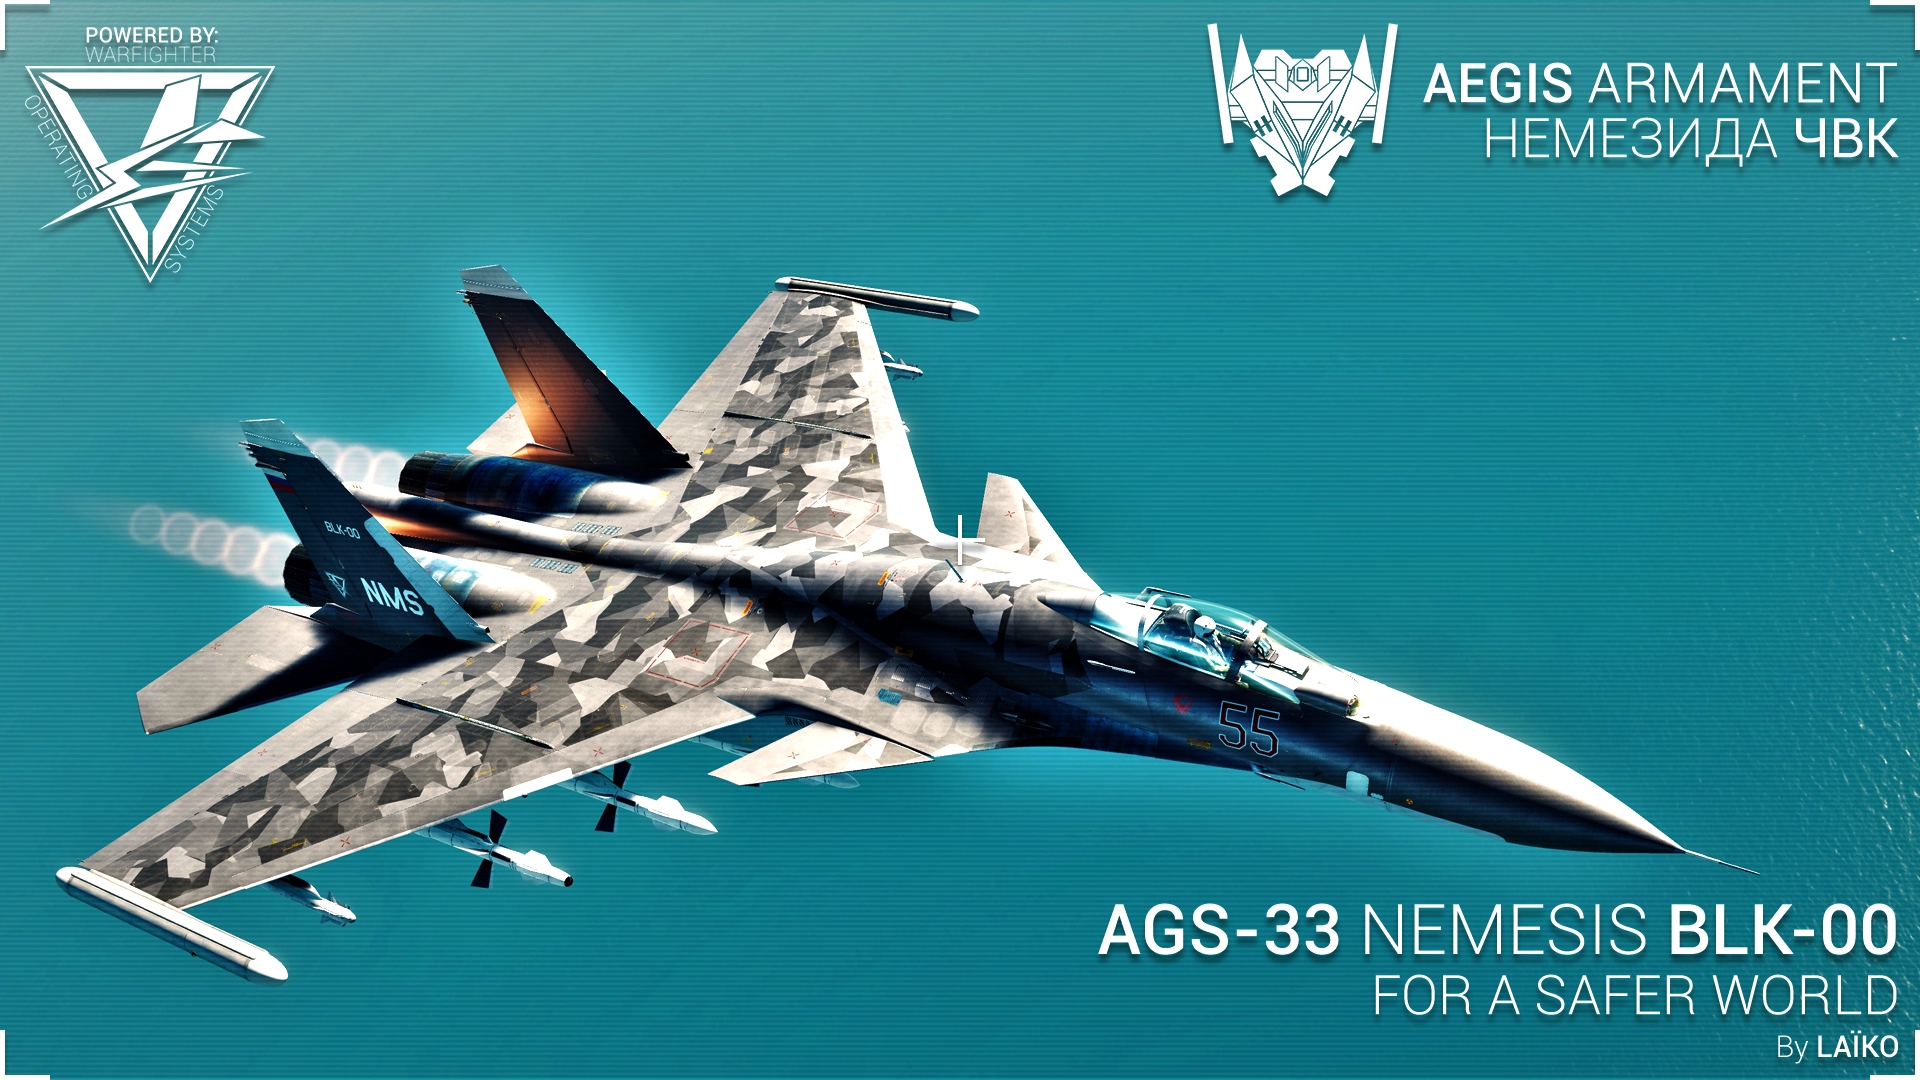 AGS-33 "NEMESIS" BLK-00